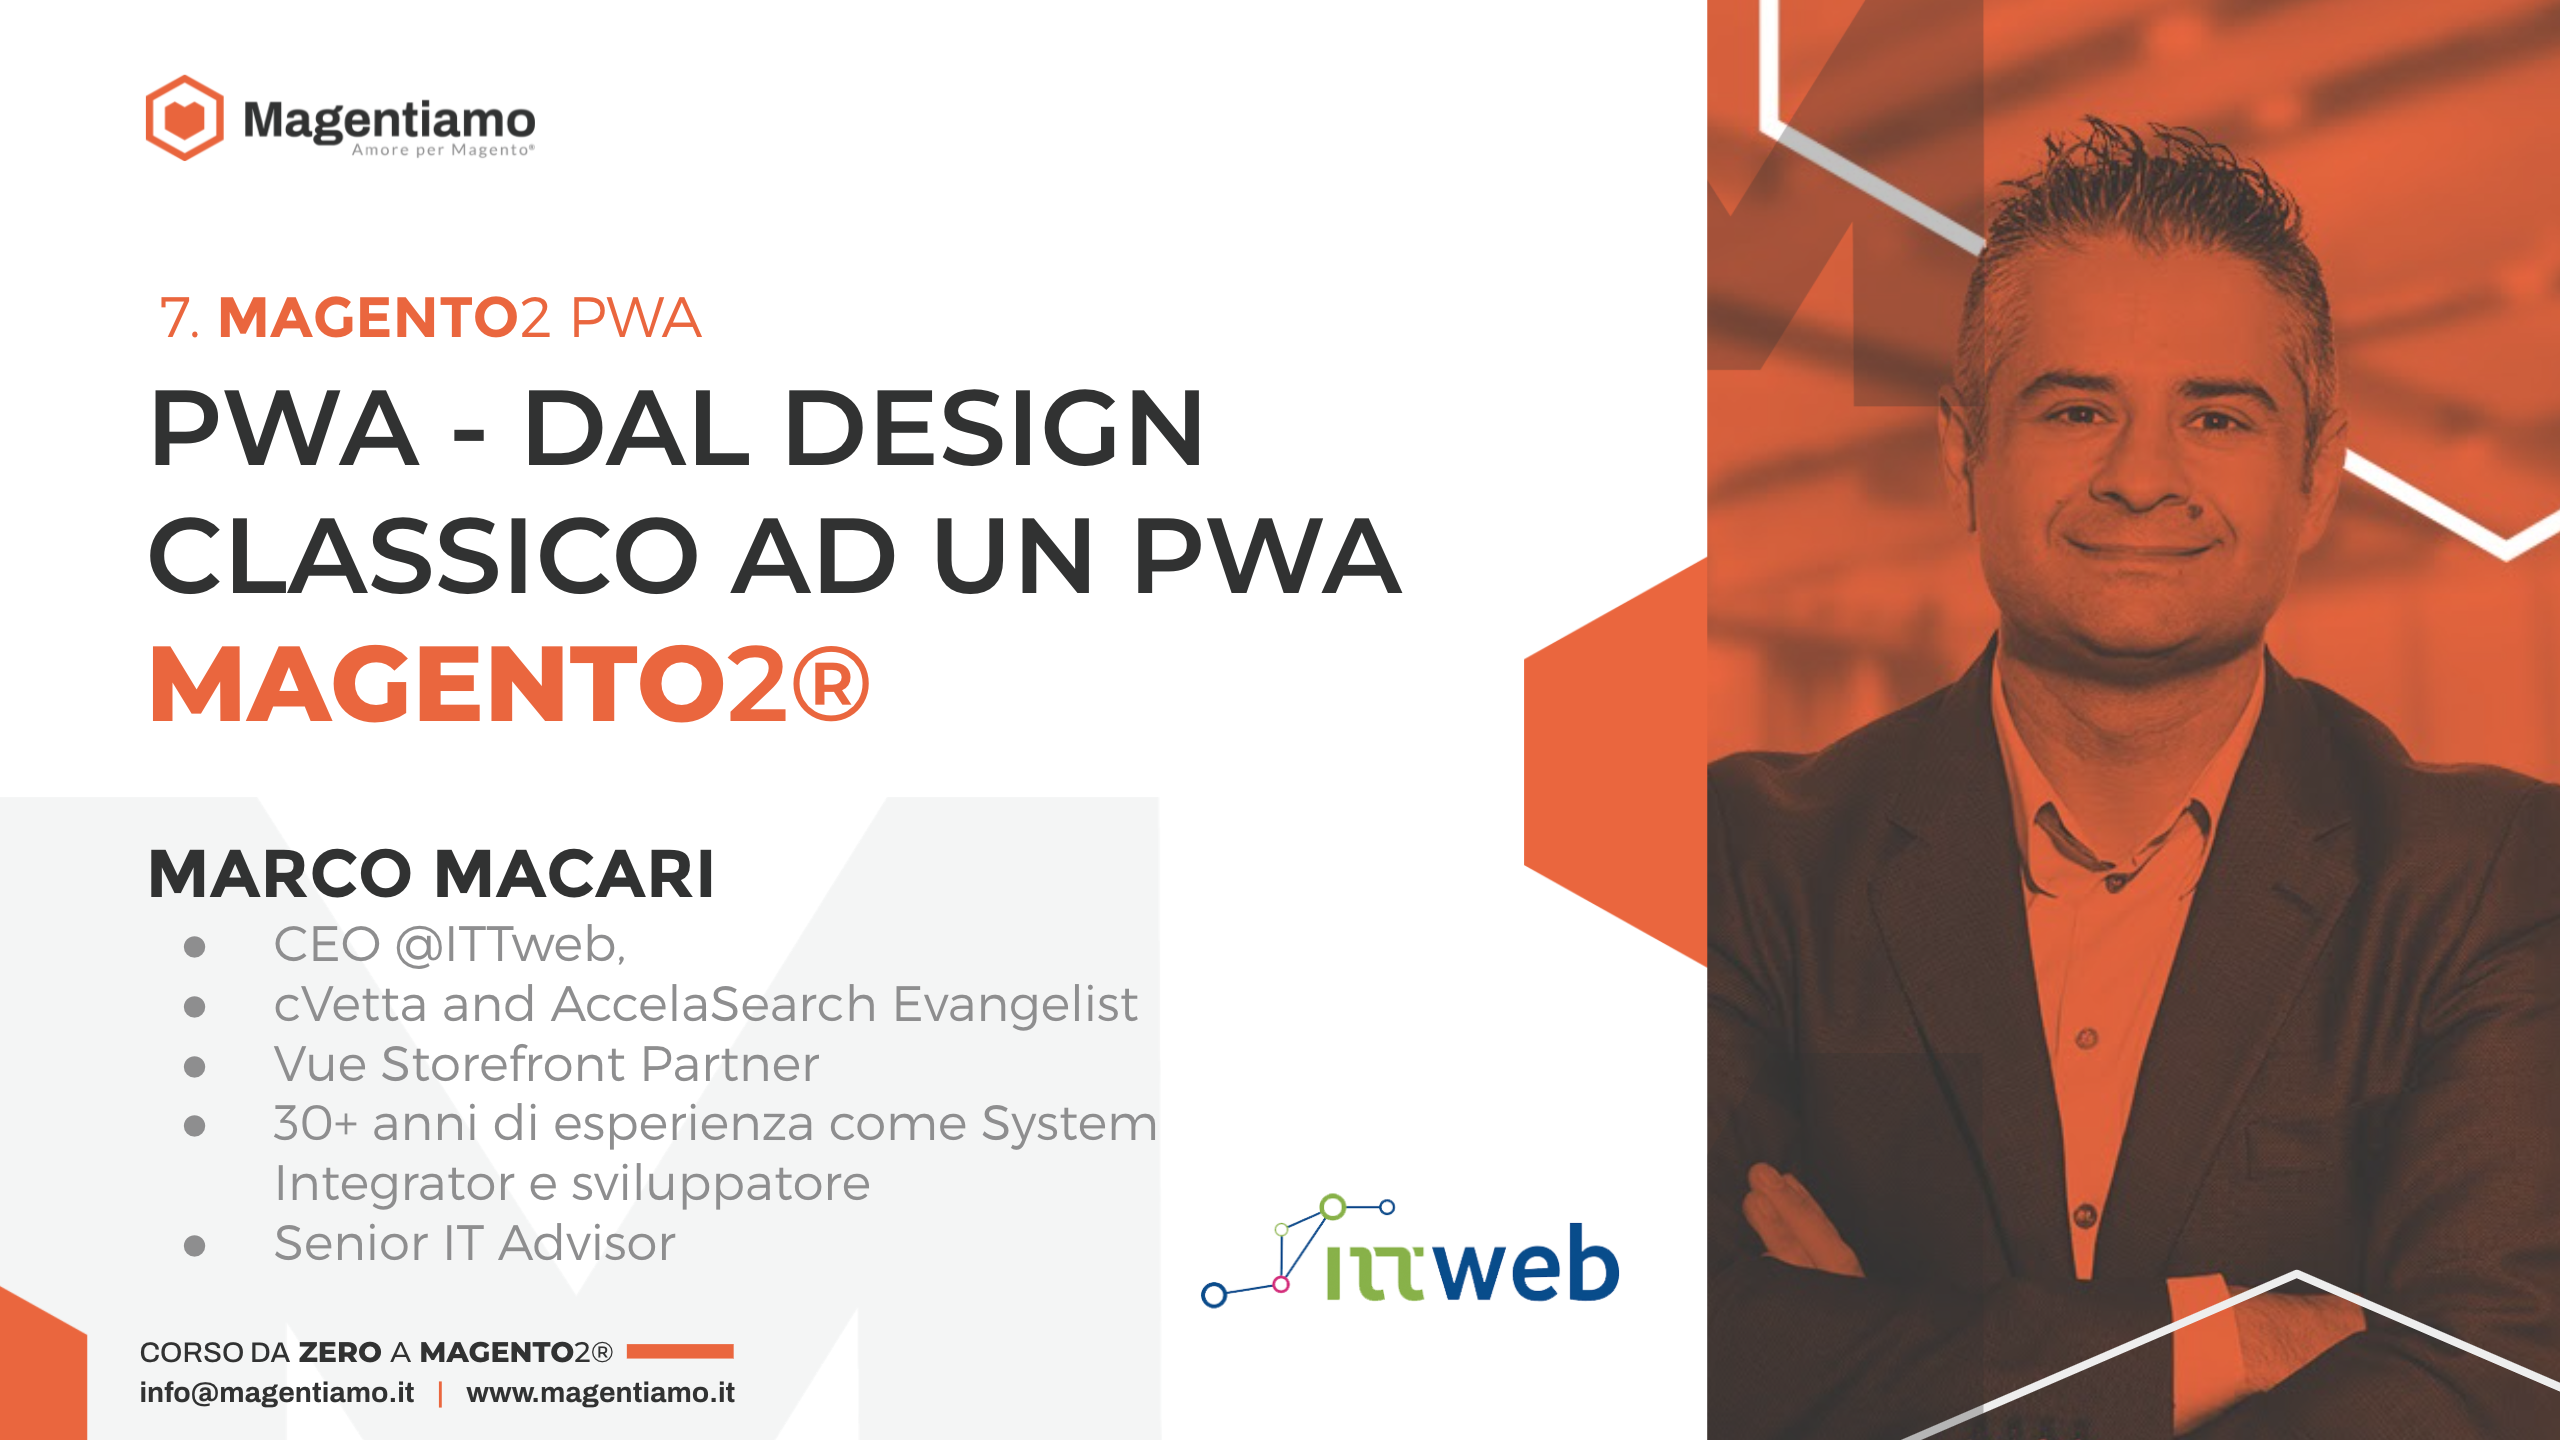 7. PWA Dal Design Classico ad una PWA in Magento 2 - MARCO MACARI